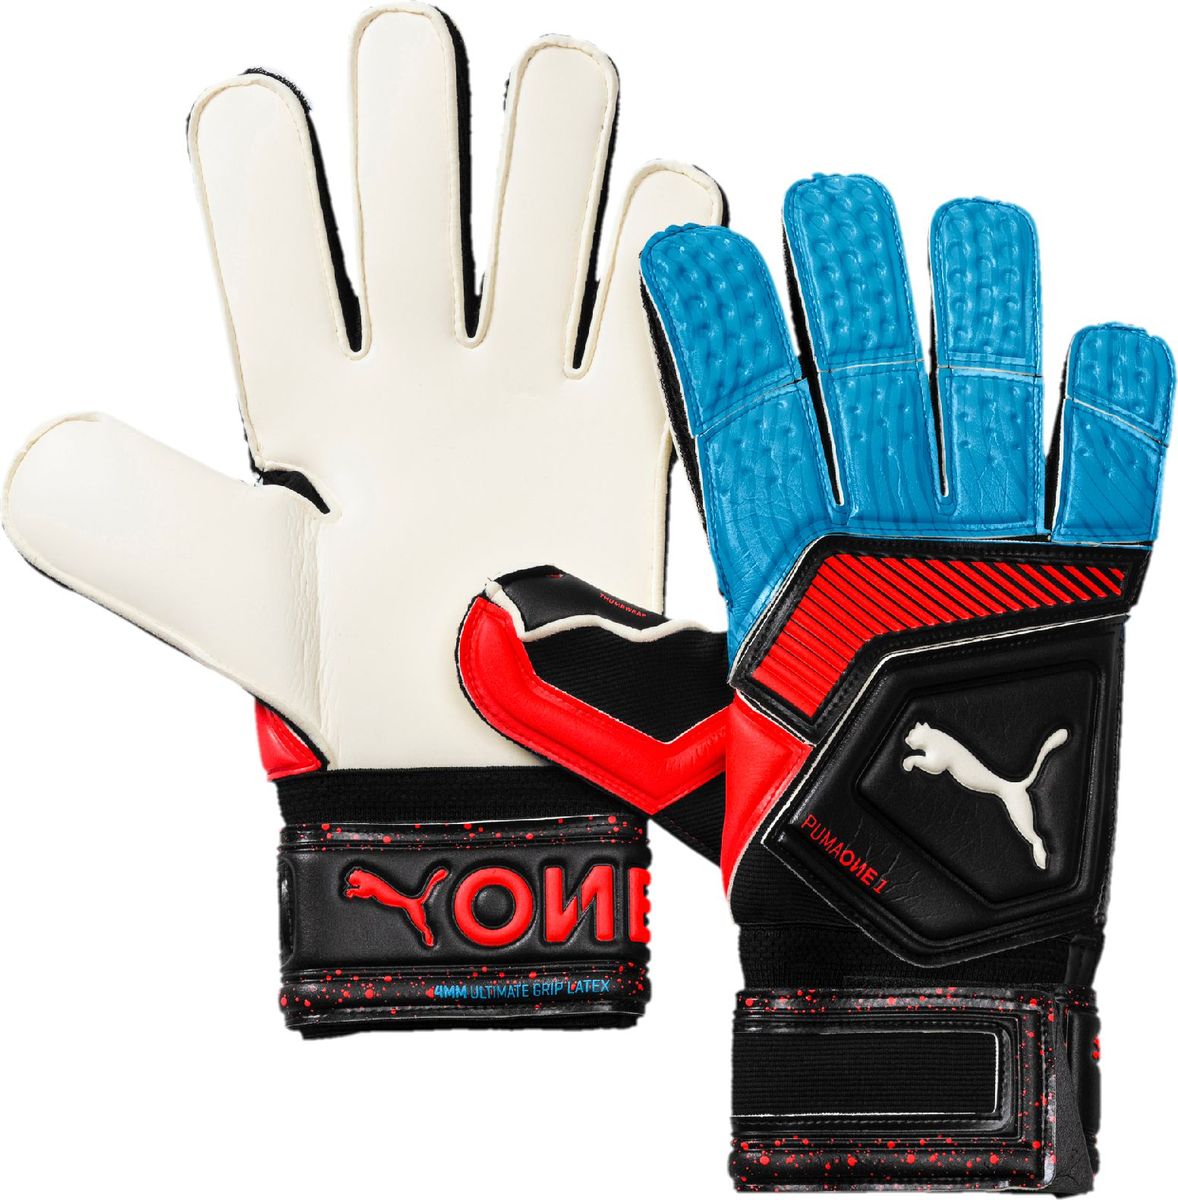 Перчатки вратарские Puma One Grip 1 RC, 04147021, черный, синий, размер 9,5